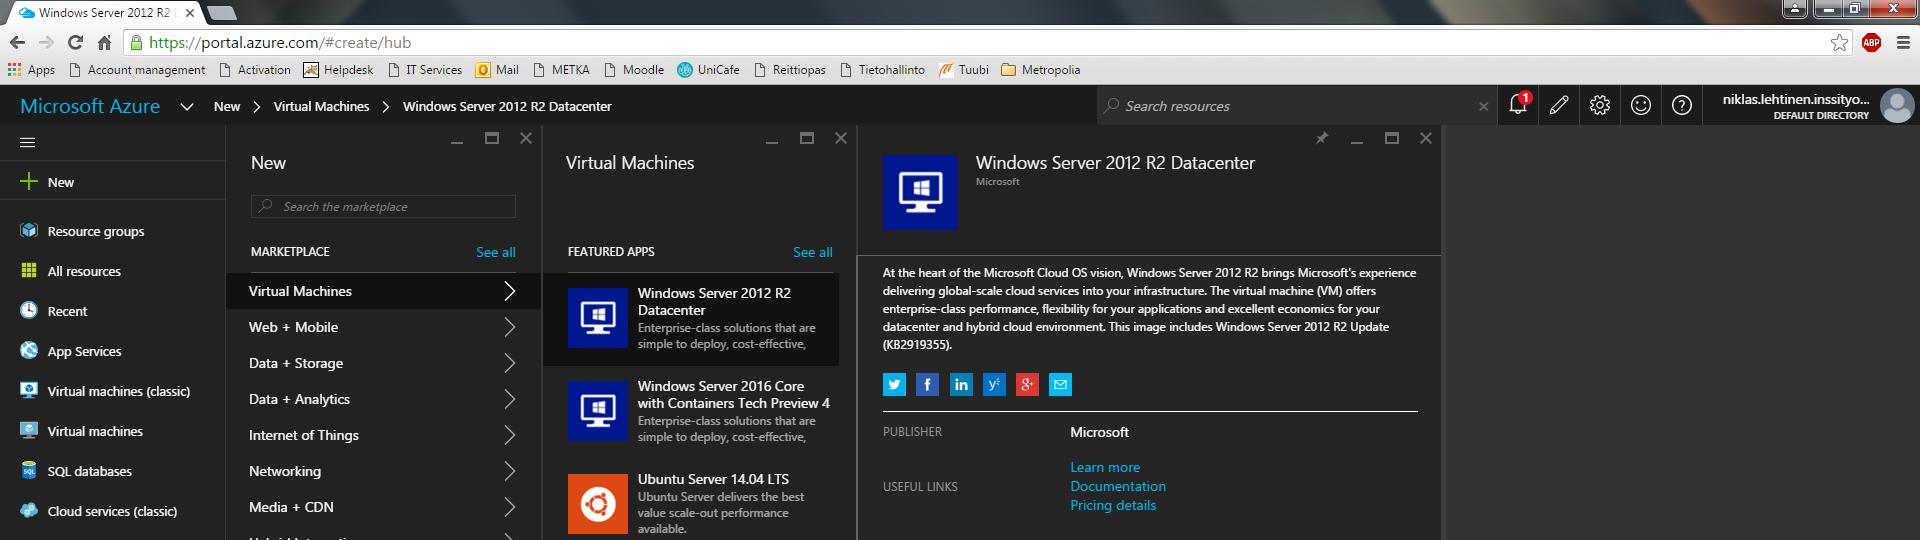 8 Vielä viimeiseksi luodaan kaksi virtuaalikonetta, joihin Azure asentaa Windows Server 2012 R2 Datacenter -palvelimet.